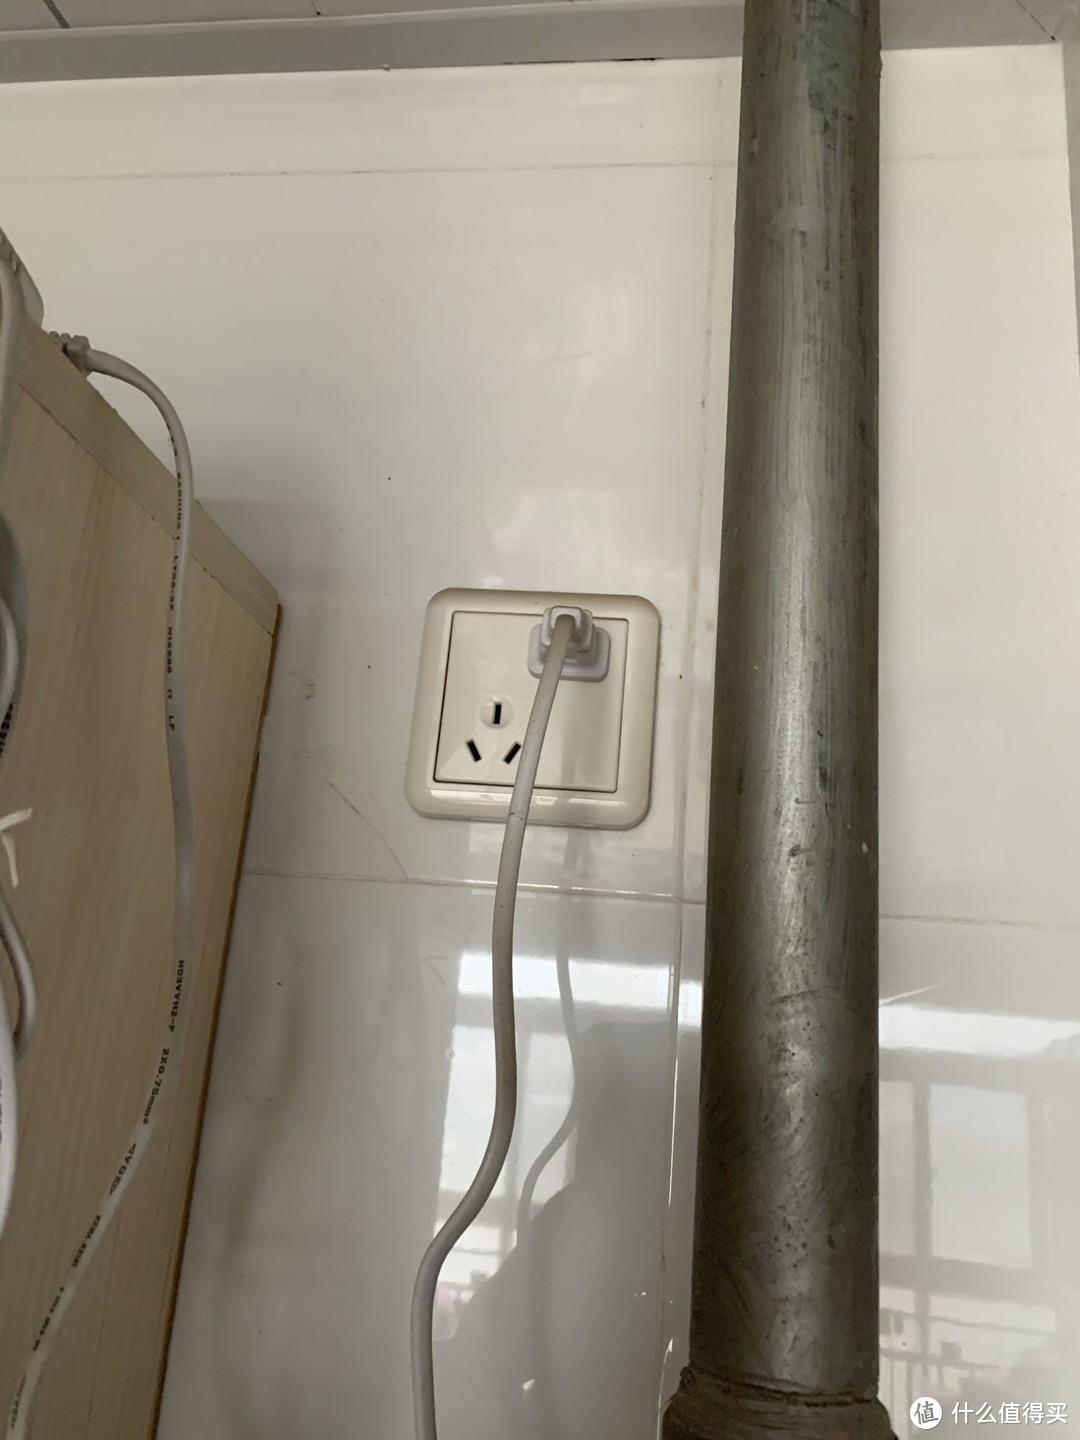 分享下我家装修的一点经验：插座和弱电相关